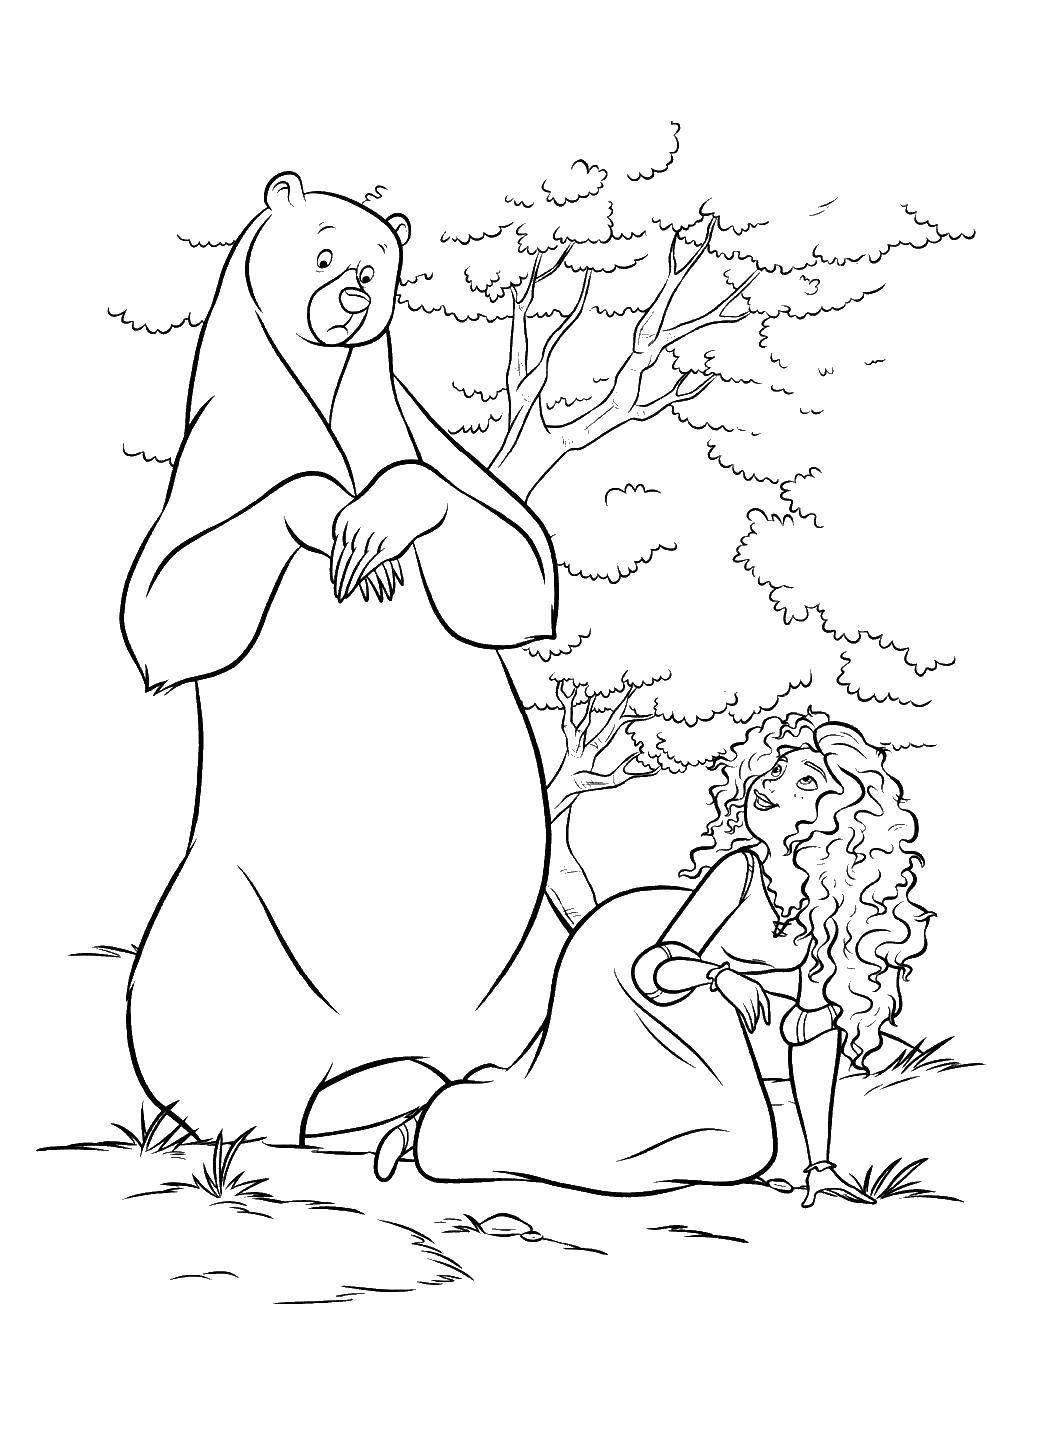 Название: Раскраска Мерида с медведем. Категория: храбрая сердцем. Теги: Персонаж из мультфильма.